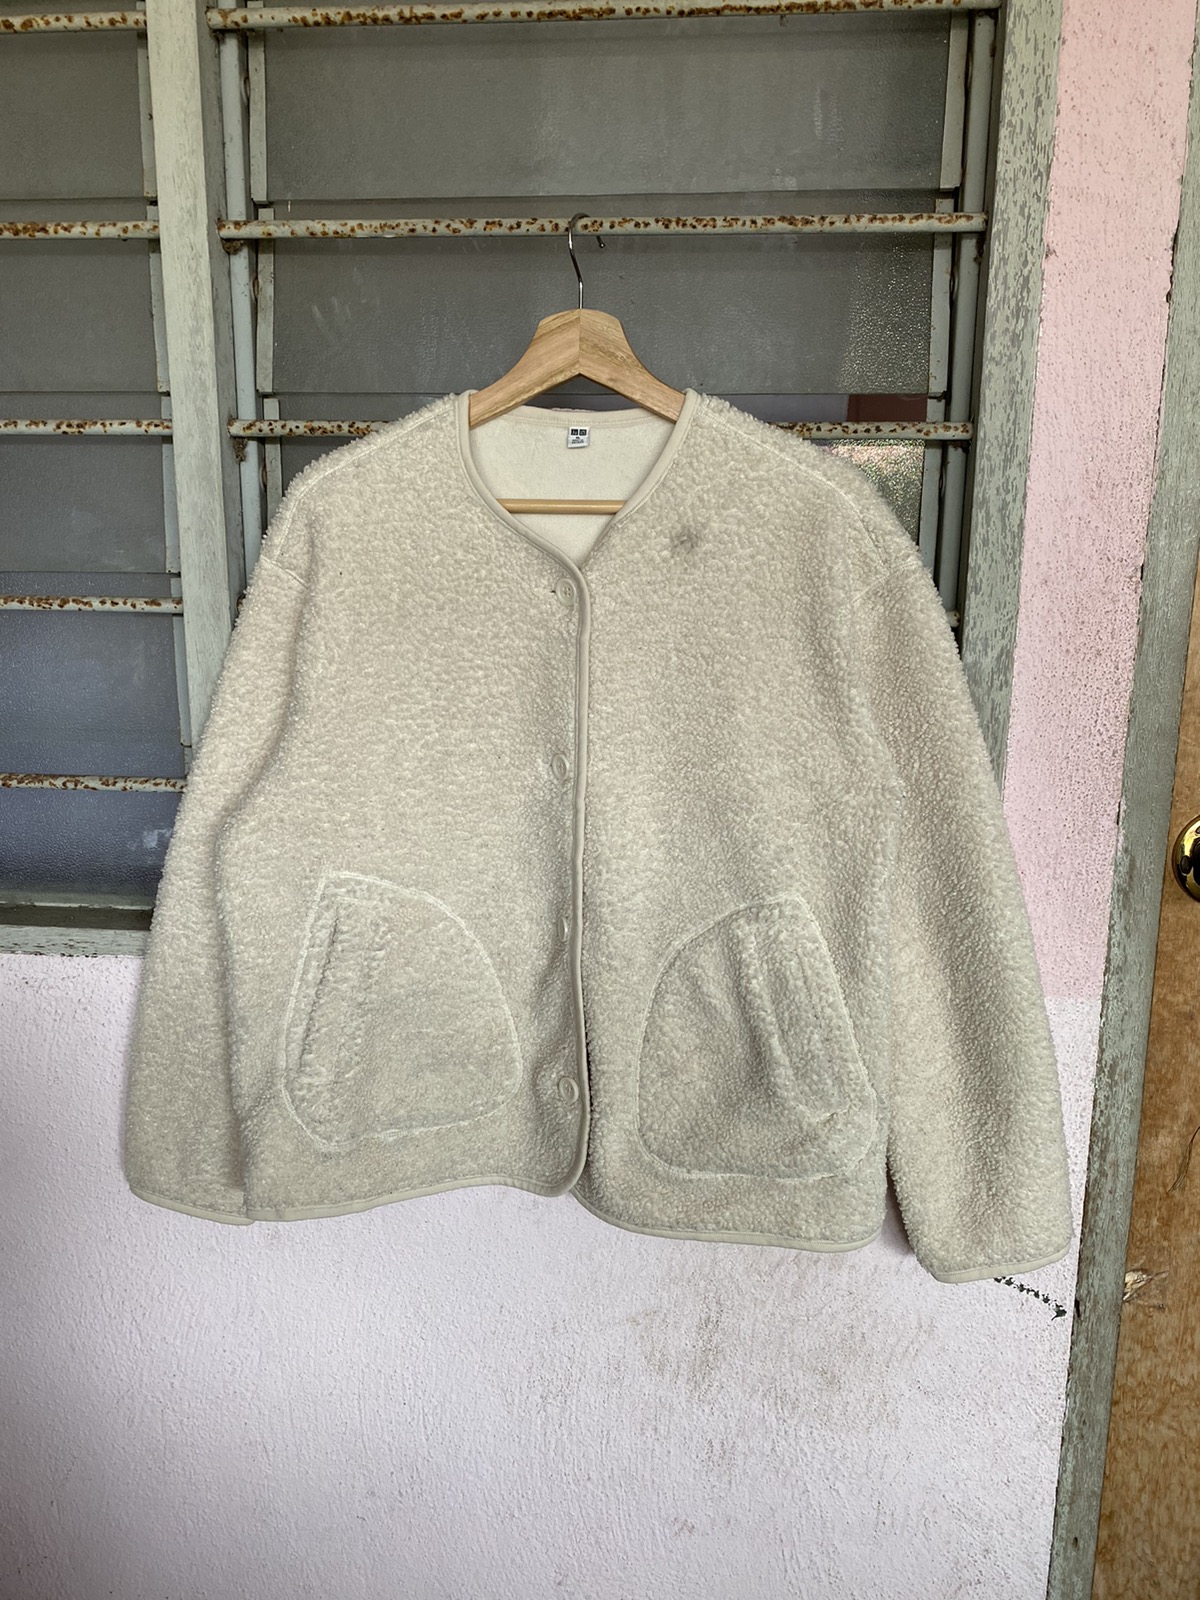 Uniqlo - 🔥 STEALS 🔥 Uniqlo Sherpa Fleece Cropped Cardigan - 5